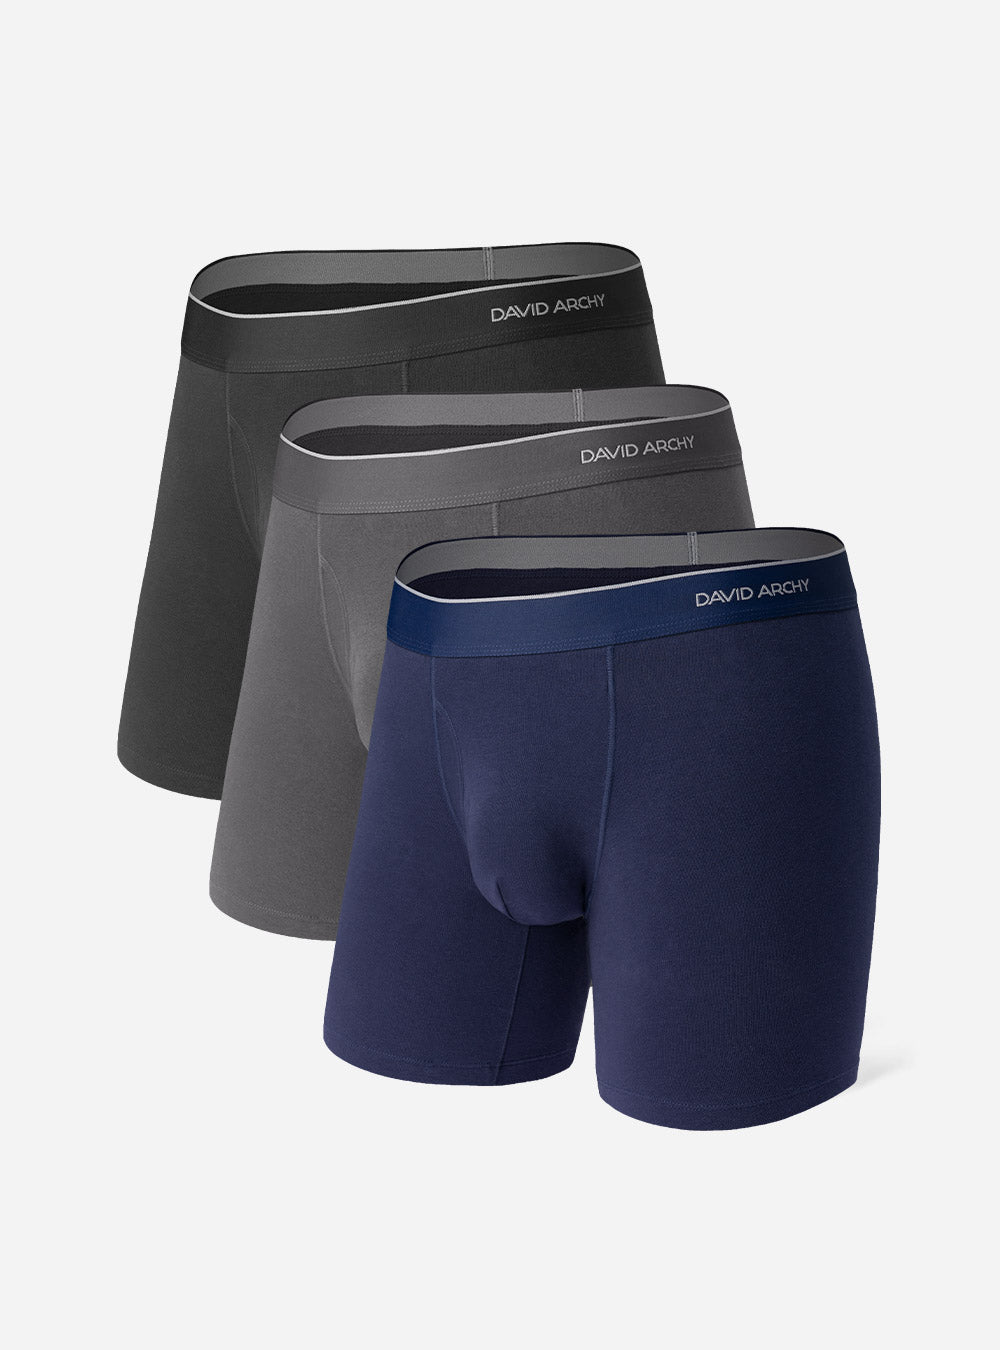 3 Pack Mens Boxer Briefs Shorts Cotton Bulge Pouch Underwear Underpants